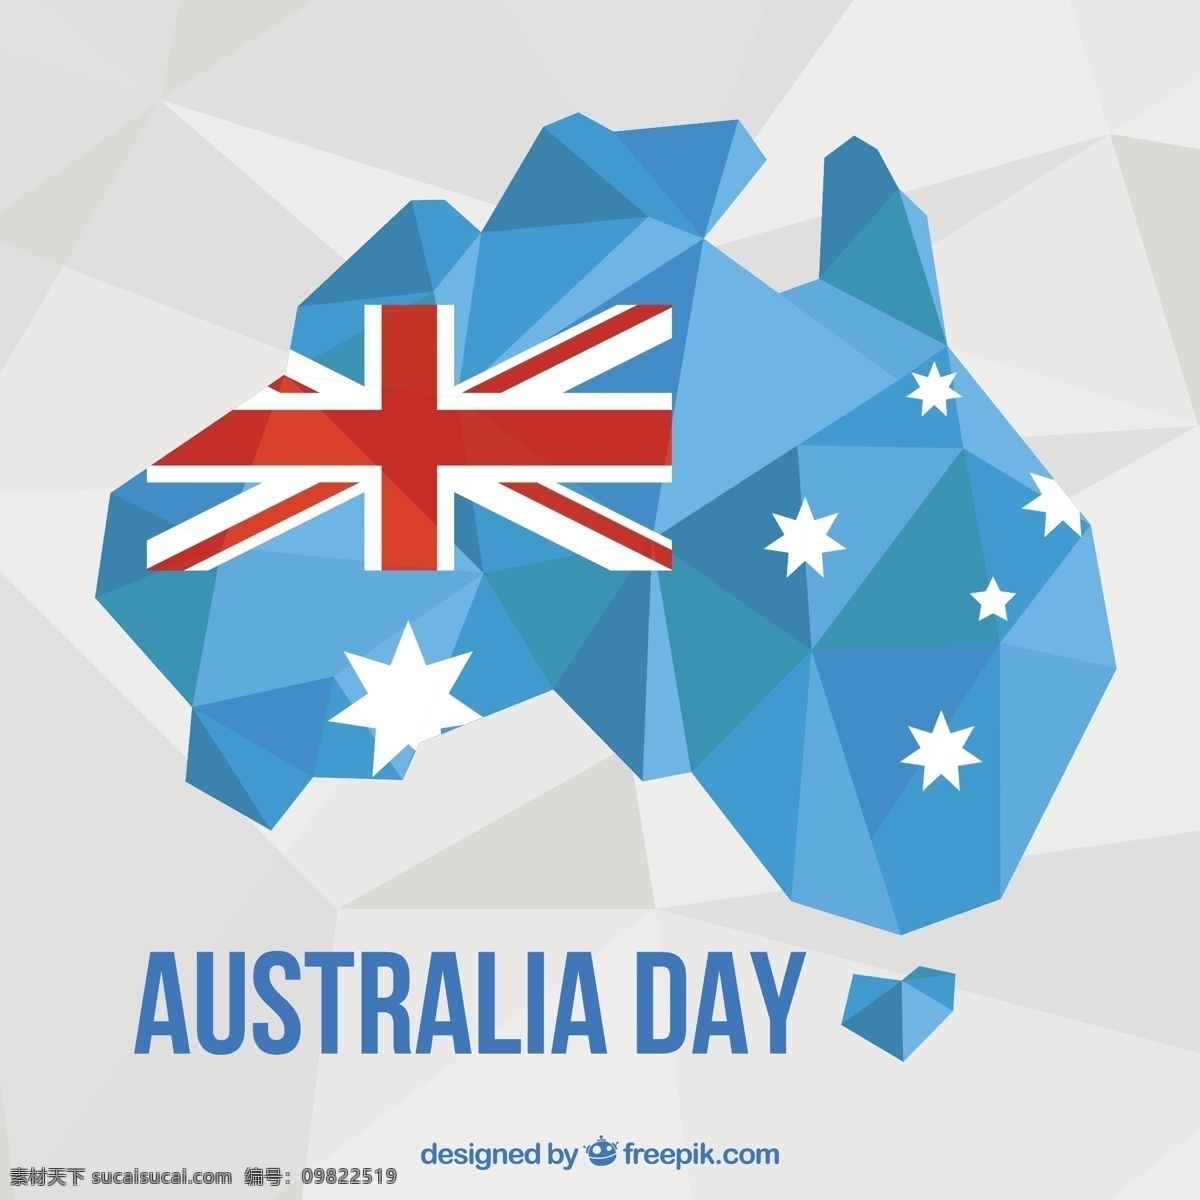 多边形 背景 准备 澳大利亚 日 几何 地图 国旗 庆典 星星 平面 几何背景 平面设计 多边形背景 自由 天 星背景 一月 爱国